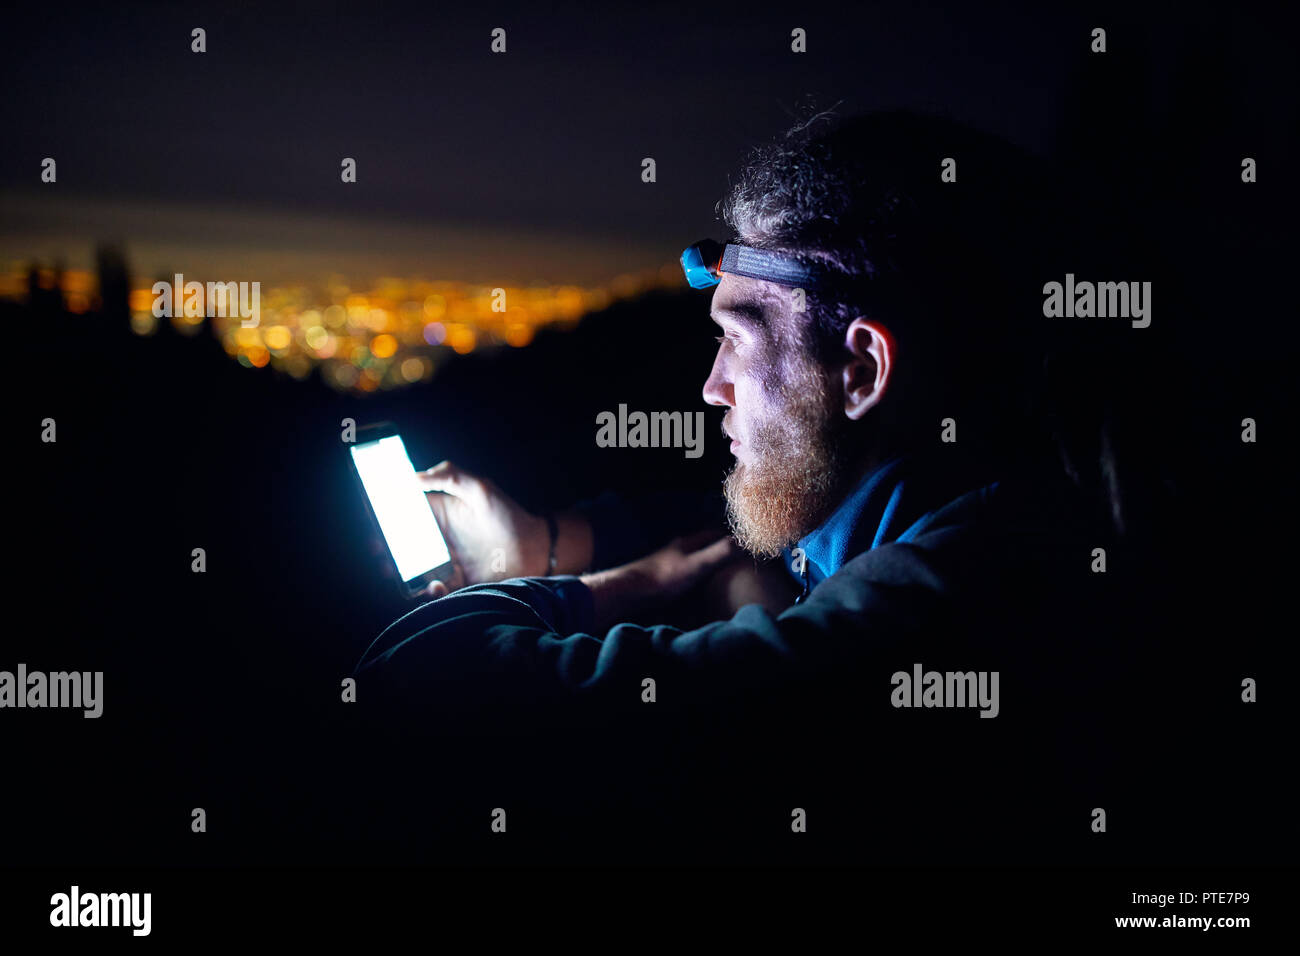 Ritratto di uomo con smartphone incandescente e luci led contro il cielo notturno con stelle e incandescente città sfondo luminoso. Foto Stock